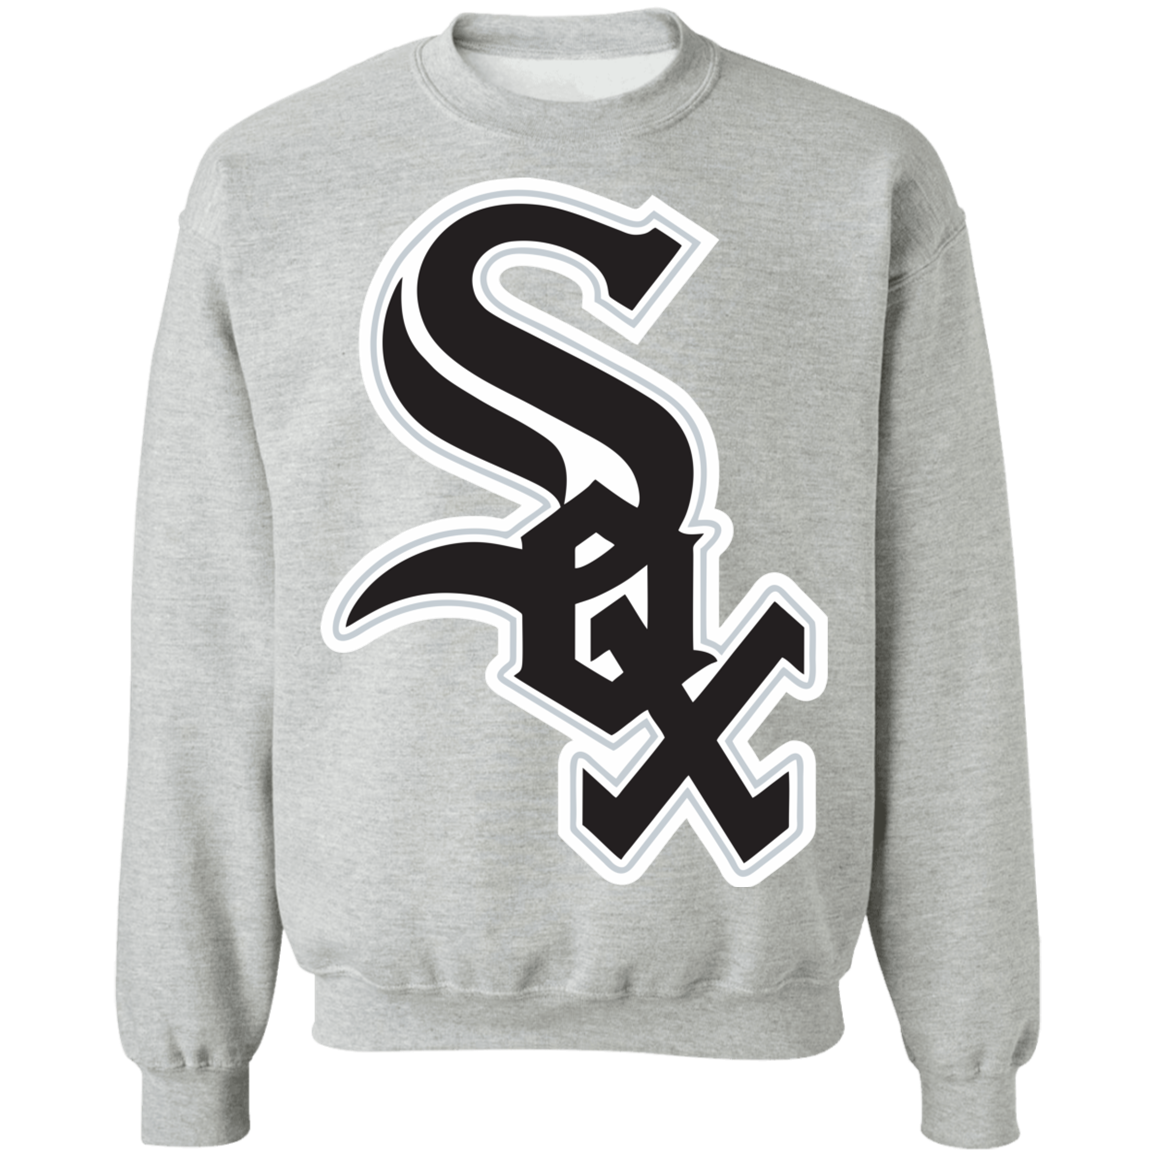 Chicago White Sox Sweatshirt